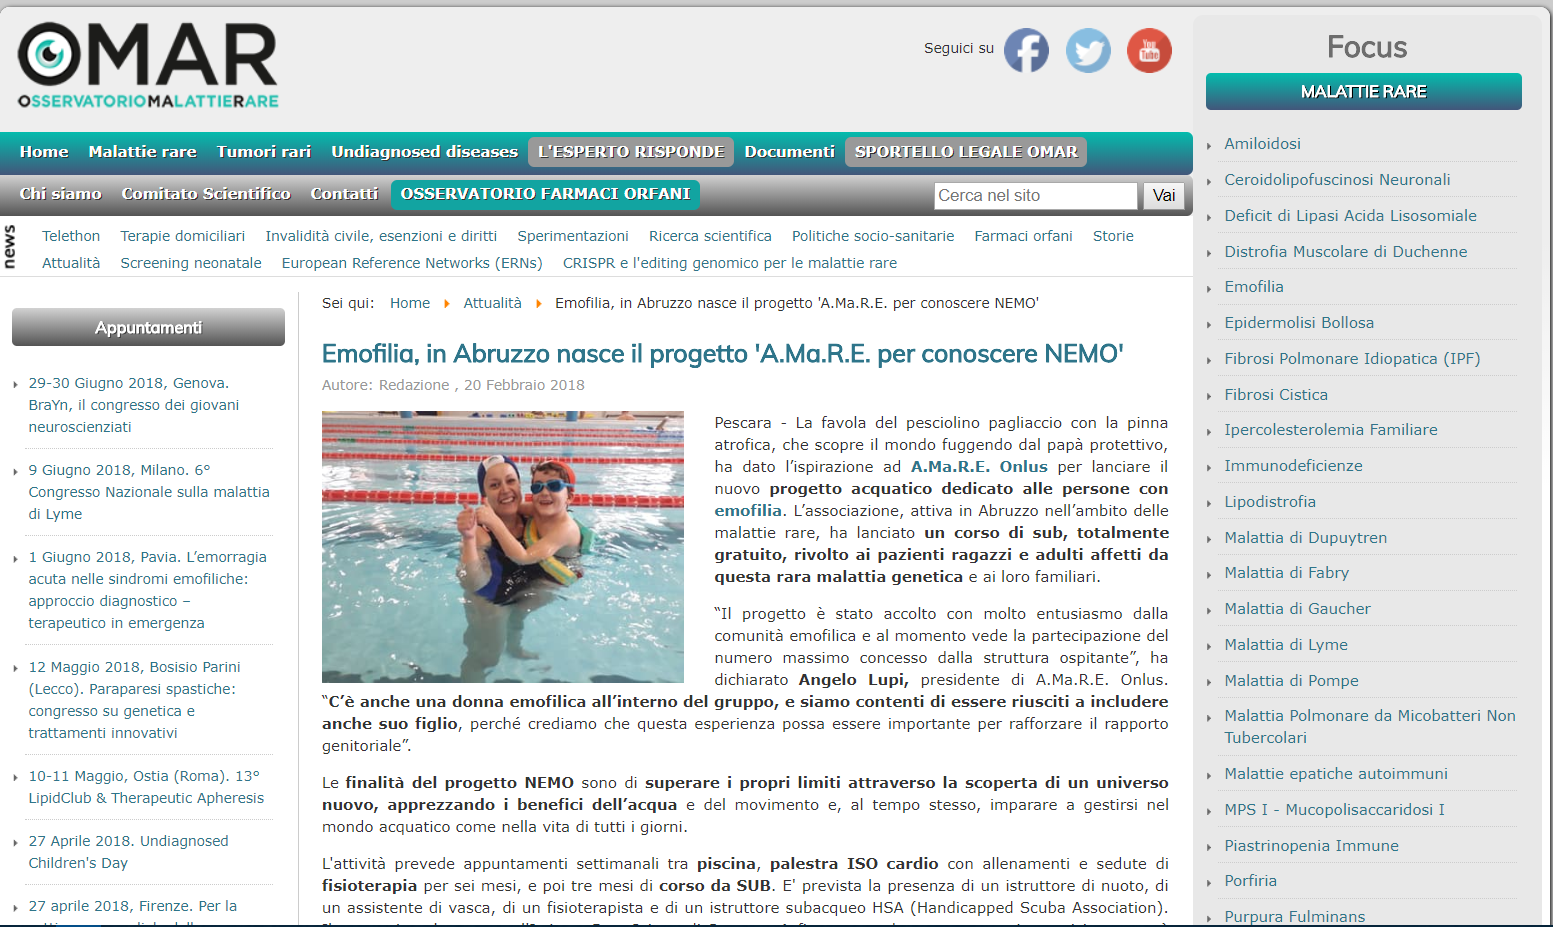 Emofilia, in Abruzzo nasce il progetto 'A.Ma.R.E. per conoscere NEMO'